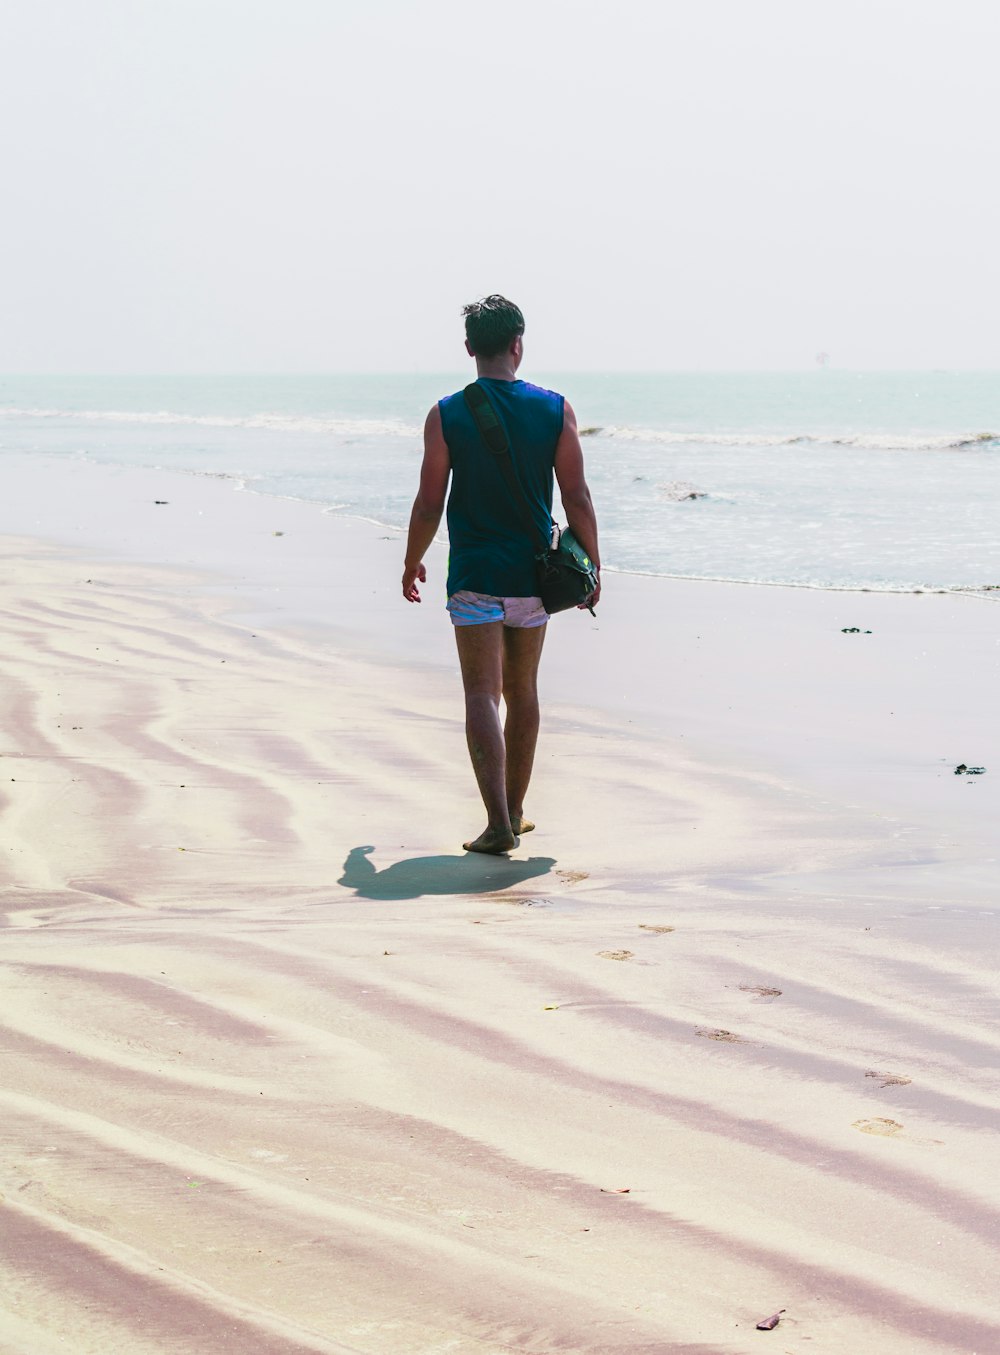 파란색 셔츠와 검은 반바지를 입은 남자가 낮 동안 해변을 걷고 있다